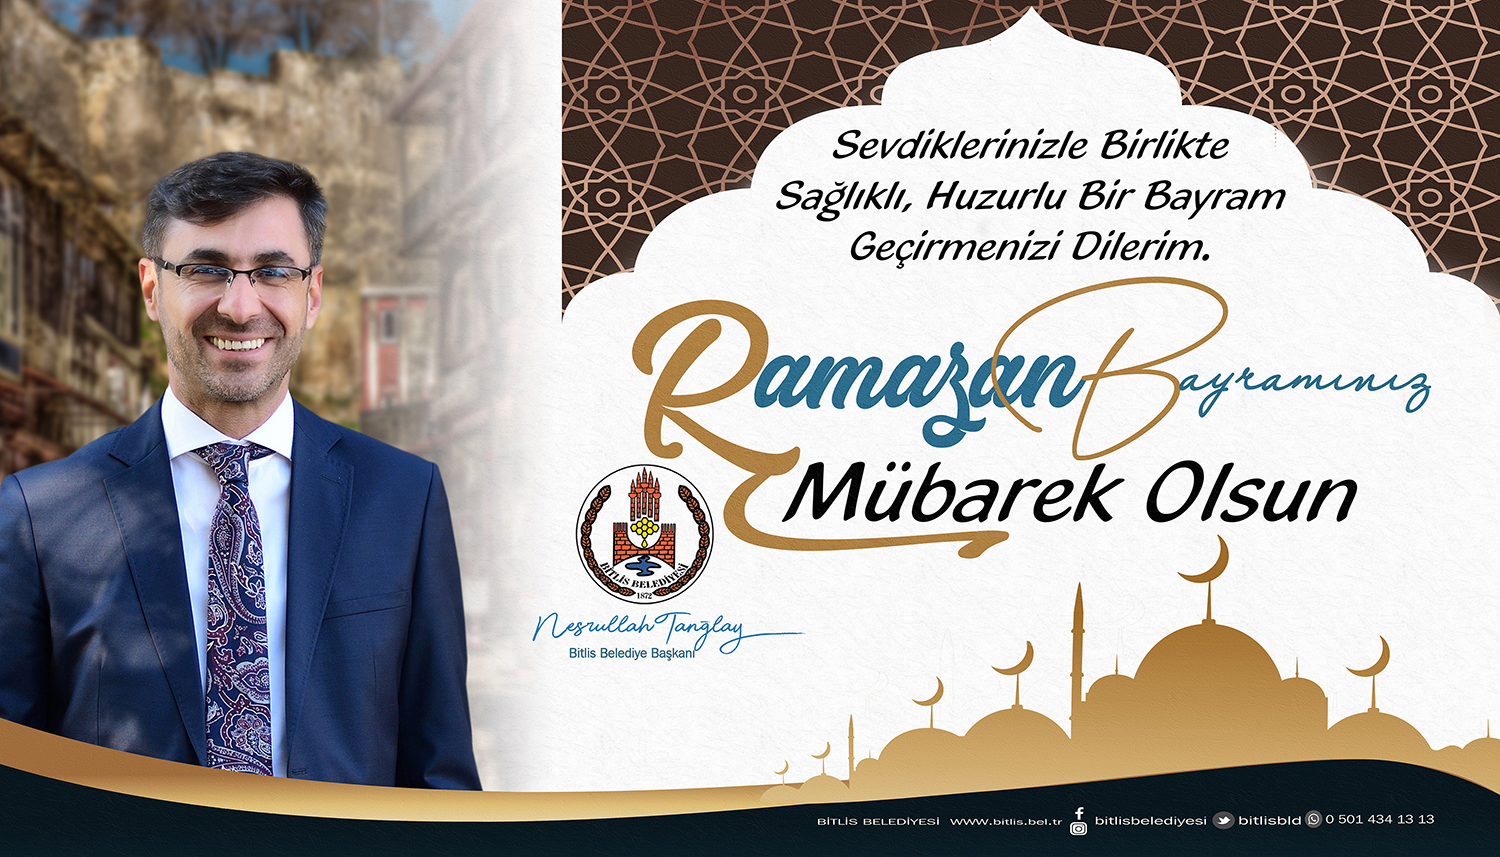 Bitlis Belediye Başkanı Nesrullah Tanğlay: Mübarek Ramazan Bayramı münasebetiyle yayımladığı kutlama mesajında tüm Müslüman aleminin bayramını kutladı. Başkan Tanğlay yayınladığı mesajda “Dinimizin, rahmet, merhamet ve bereket ayı olarak nitelediği mübarek Ramazan-ı Şerif’i geride bırakarak, milletçe muhabbetle kucaklaştığımız bir bayrama daha kavuşmuş bulunuyoruz. Değerli Bitlisliler; her ne kadar tüm dünyanın mücadele ettiği korona virüs salgını sebebi ile ülkemizde uygulanacak sokağa çıkma yasağından ötürü bu Ramazan Bayramını sevdiklerimizden ayrı geçirecek olsak da; karşılayacağımız nice sağlıklı, huzurlu, mutlu bayramlar hayali ve temennisi ile tüm çalışma arkadaşlarımın ve kıymetli Bitlisli hemşerilerimizin Ramazan Bayramını kutluyorum. Bu bayramı çocuklarından, torunlarından ayrı geçirmek zorunda olacak değerli büyüklerimizin ellerinden; bayram sevincini ve heyecanını evde yaşayacak çocuklarımızın gözlerinden öpüyorum. Bu vesileyle, tüm hemşerilerimin ve İslam dünyasının Ramazan Bayramını kutluyor, bayramın ülkemize, dünyamıza ve tüm insanlığa barış, kardeşlik ve huzur getirmesini diliyorum” dedi.